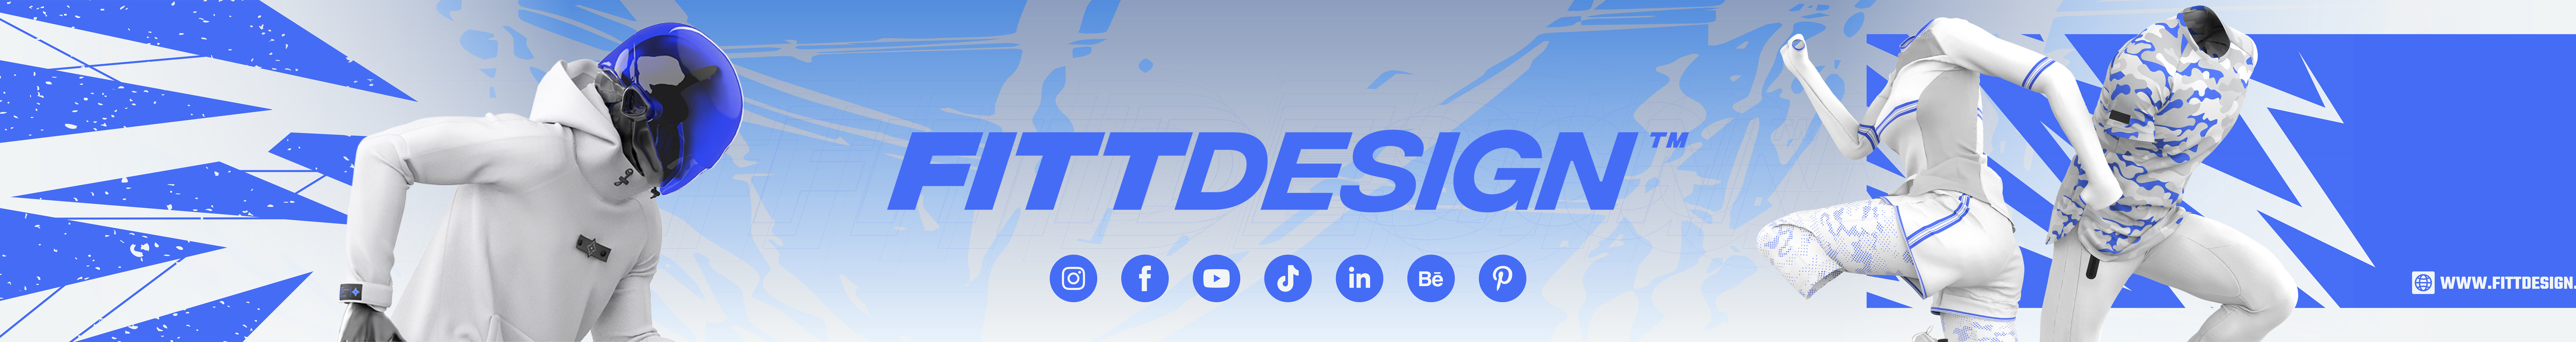 FittDesign Studio's profile banner